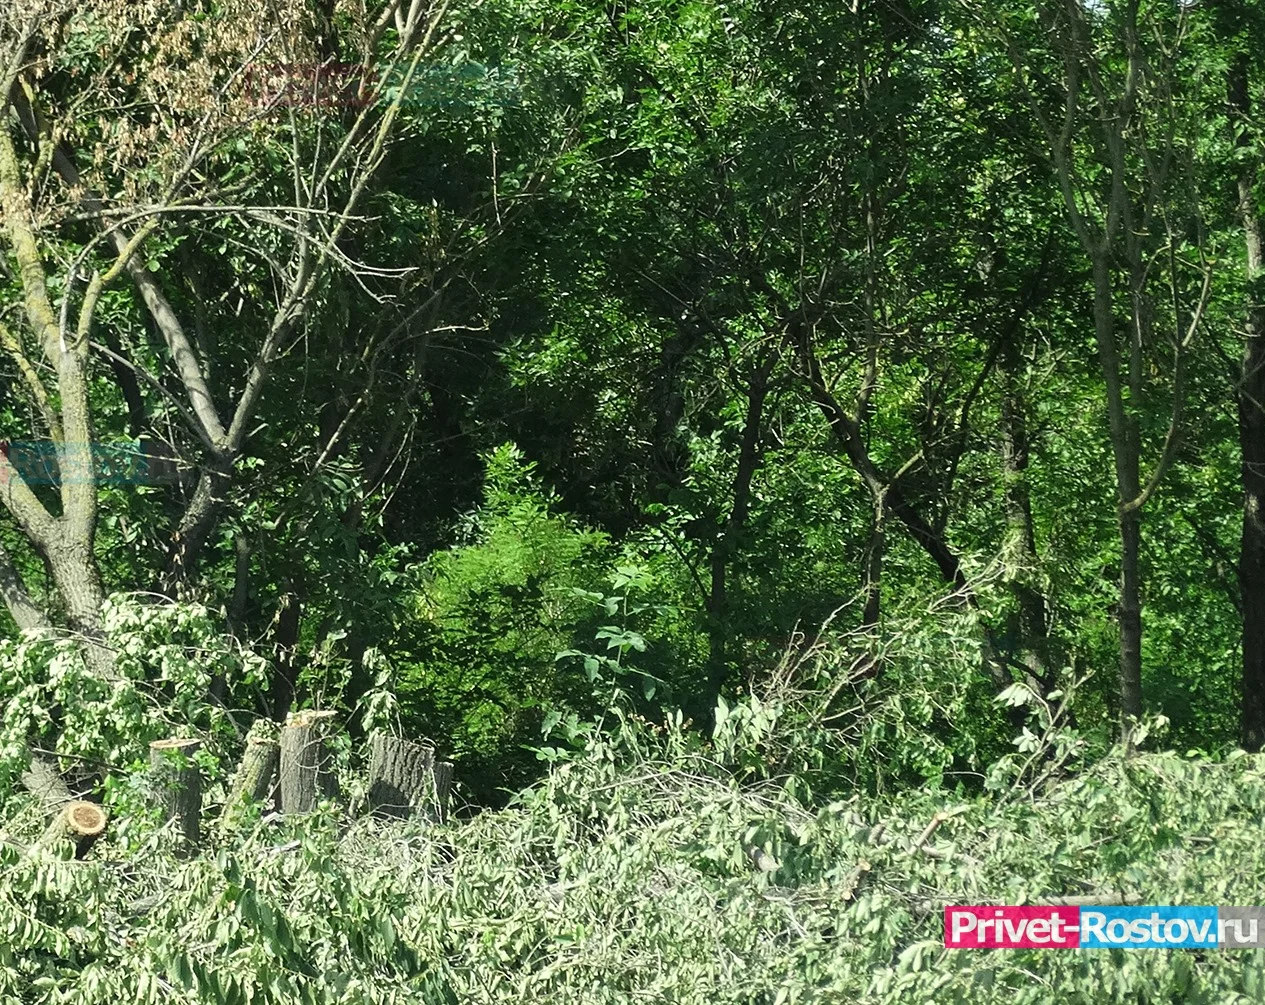 Ростовский суд признал аферу с вырубкой деревьев в парке "Дружба"